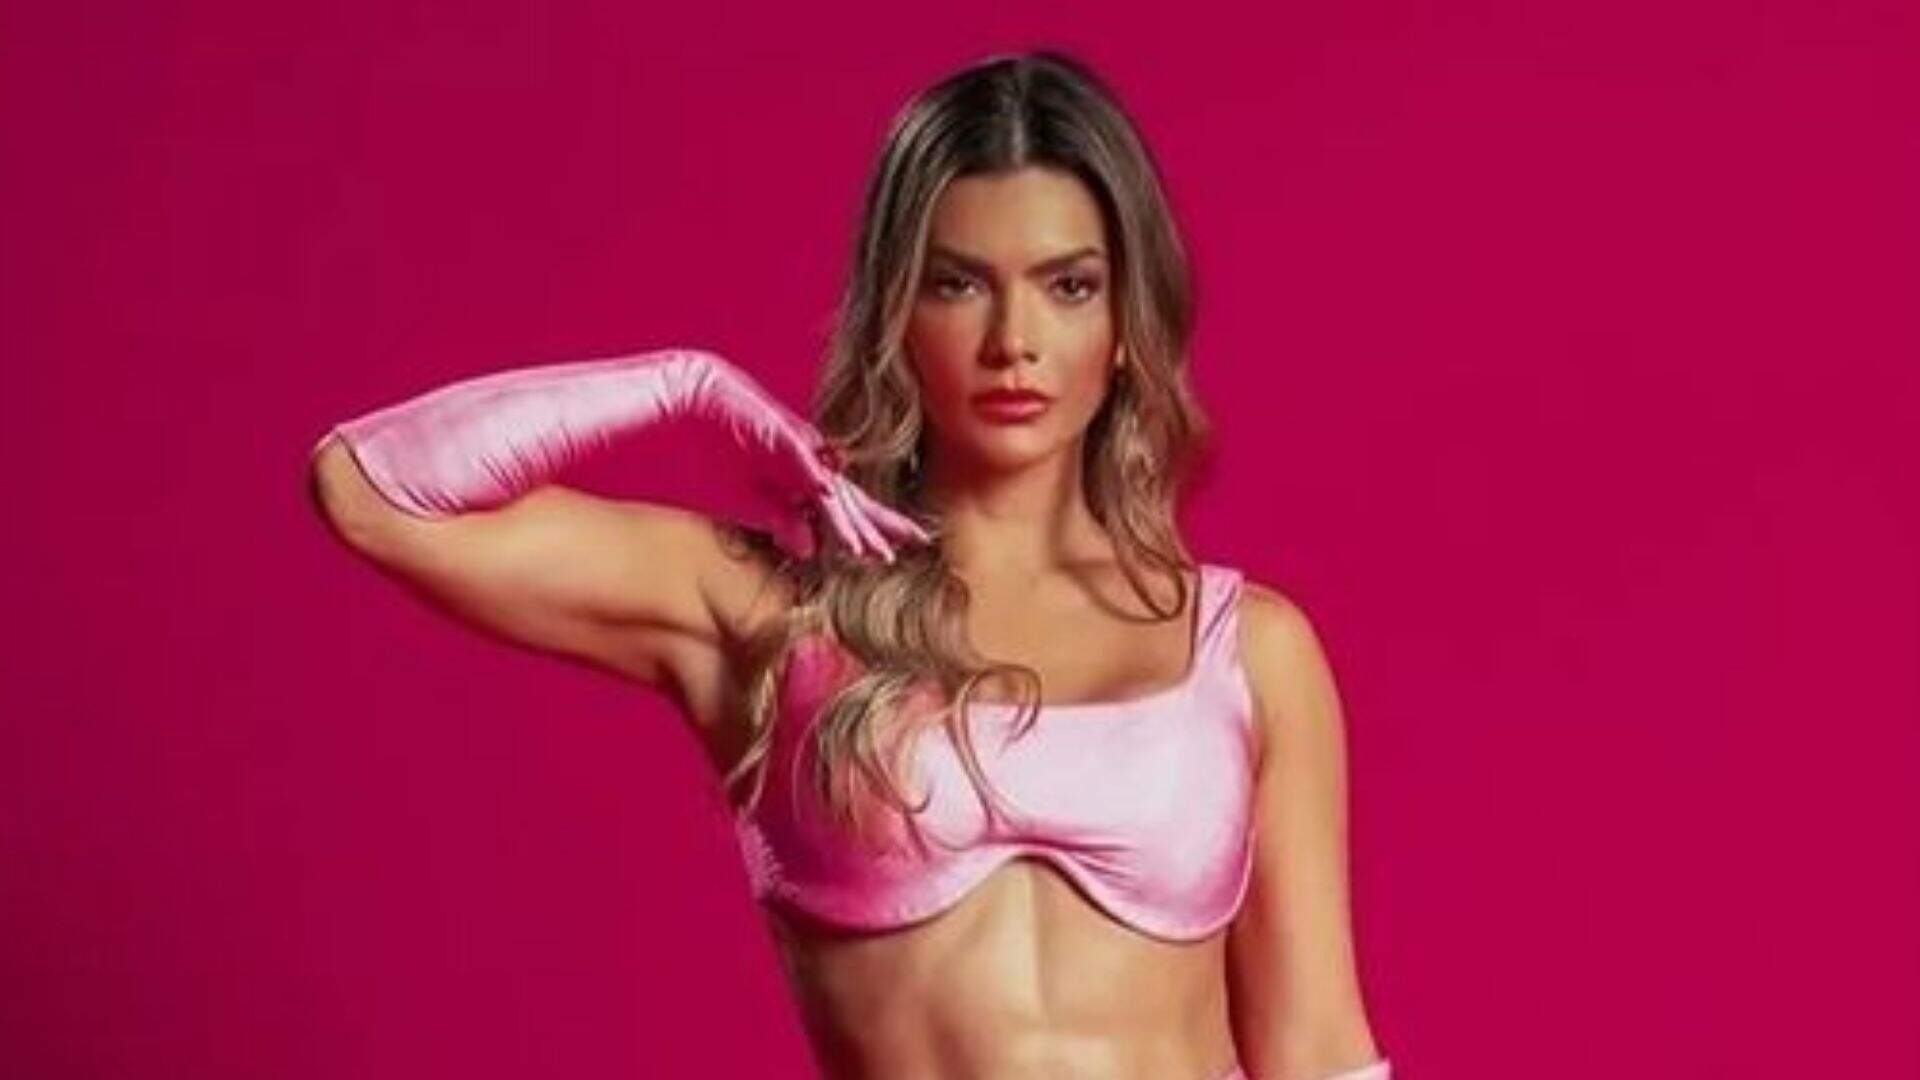 Kelly Key se veste de ‘Barbie’ e esquece que está com saia transparente: “Calcinha rosa?” - Metropolitana FM